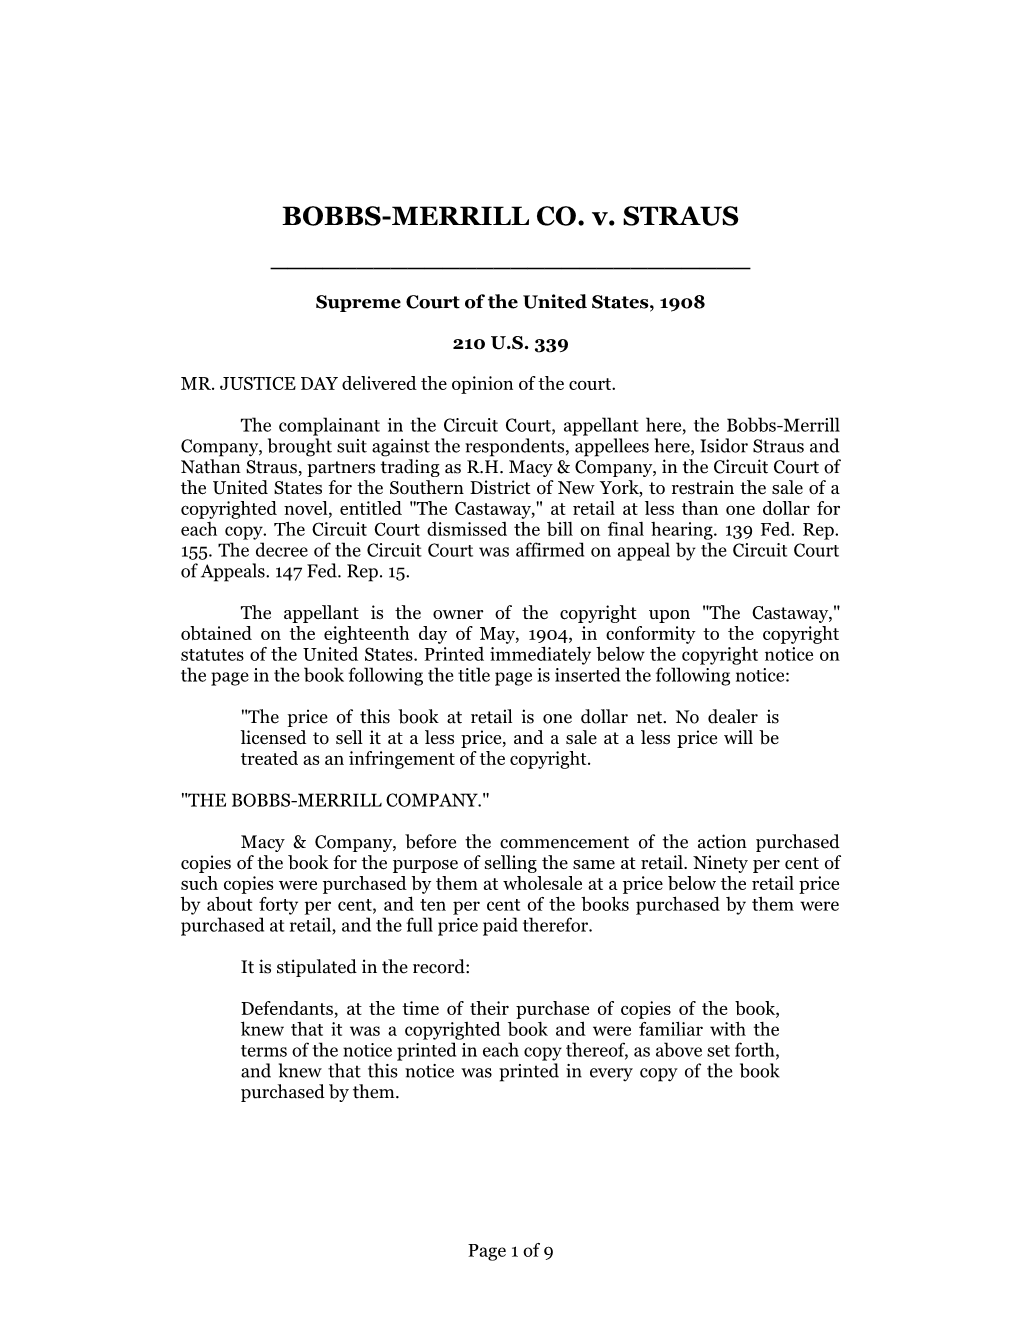 Bobbs-Merrill Co. V. Straus